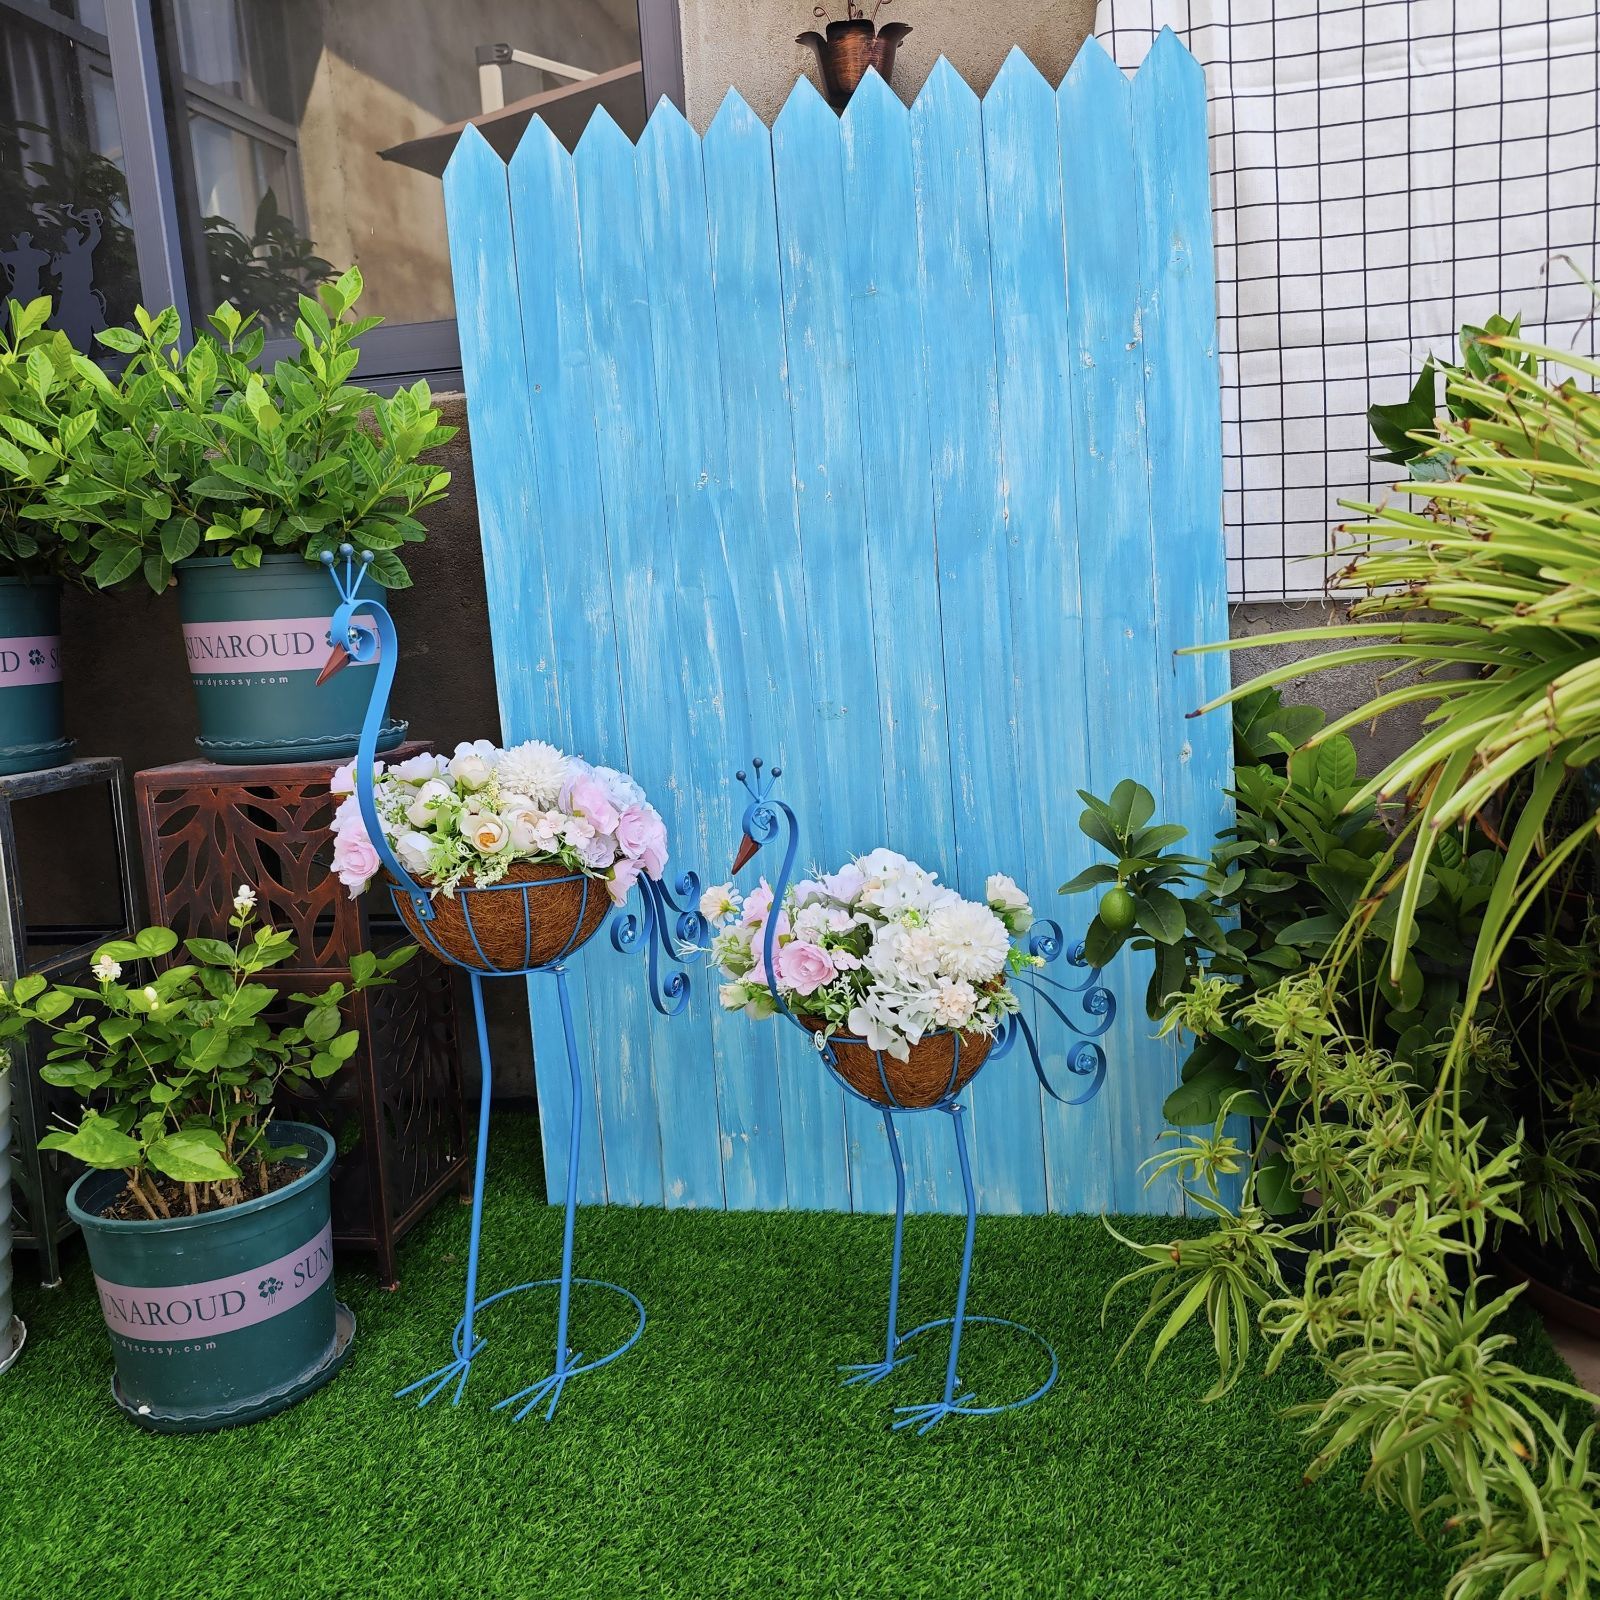 植木鉢 フラワーバスケット プランター 2個セット メタル 孔雀 ピーコック 鳥 青 ブルー 部屋の装飾 家の装飾 庭 ガーデン インテリア 4-7